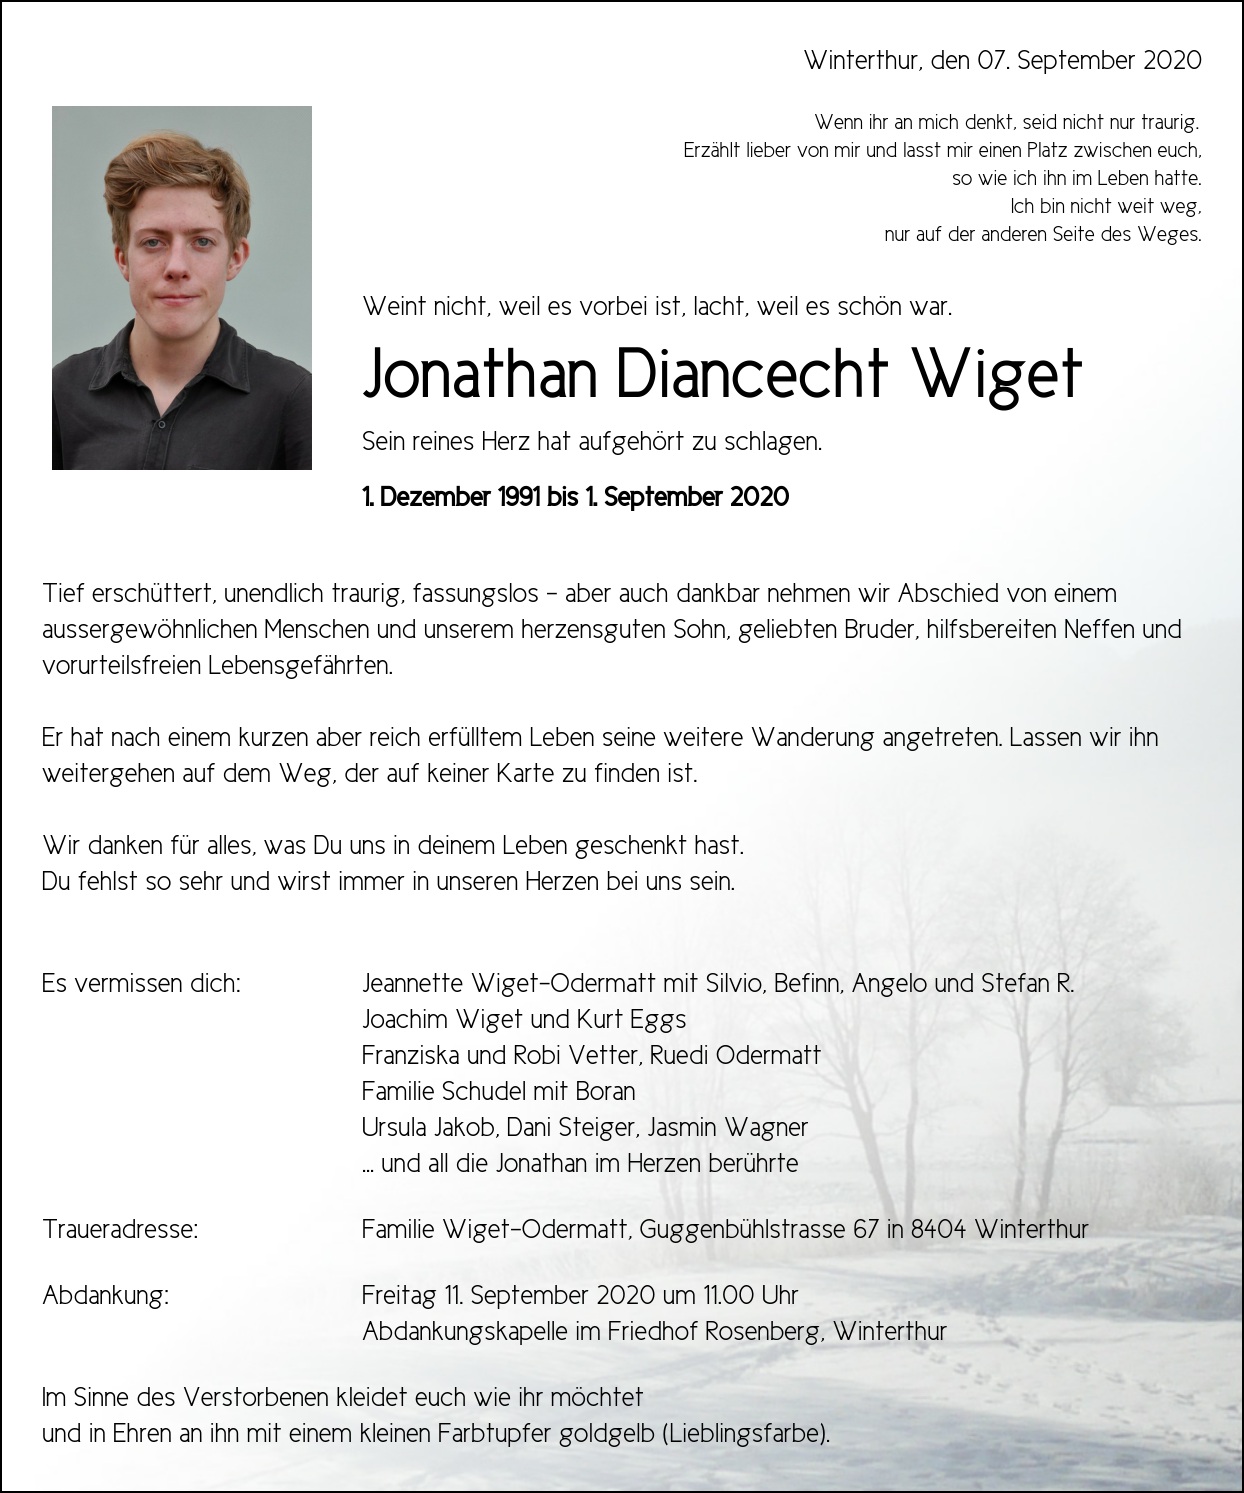 Jonathan Diancecht Wiget